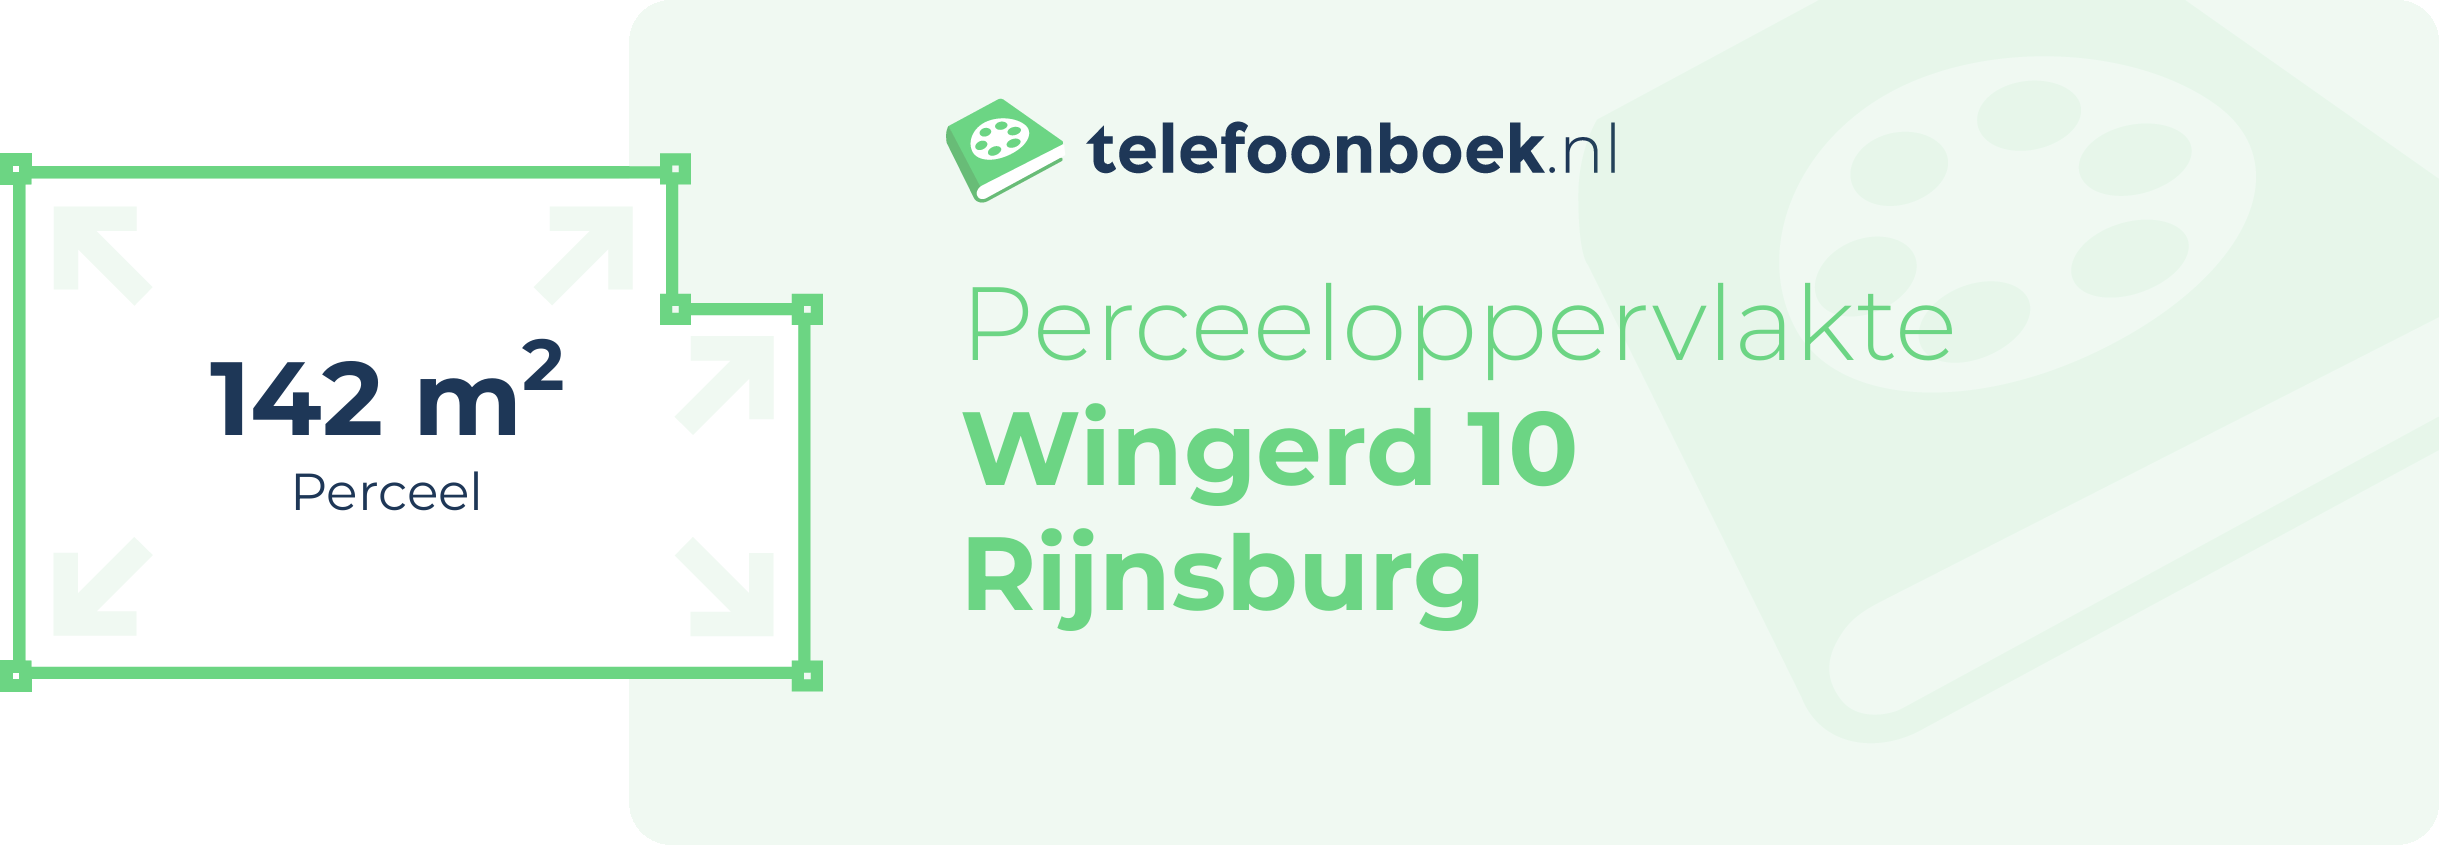 Perceeloppervlakte Wingerd 10 Rijnsburg